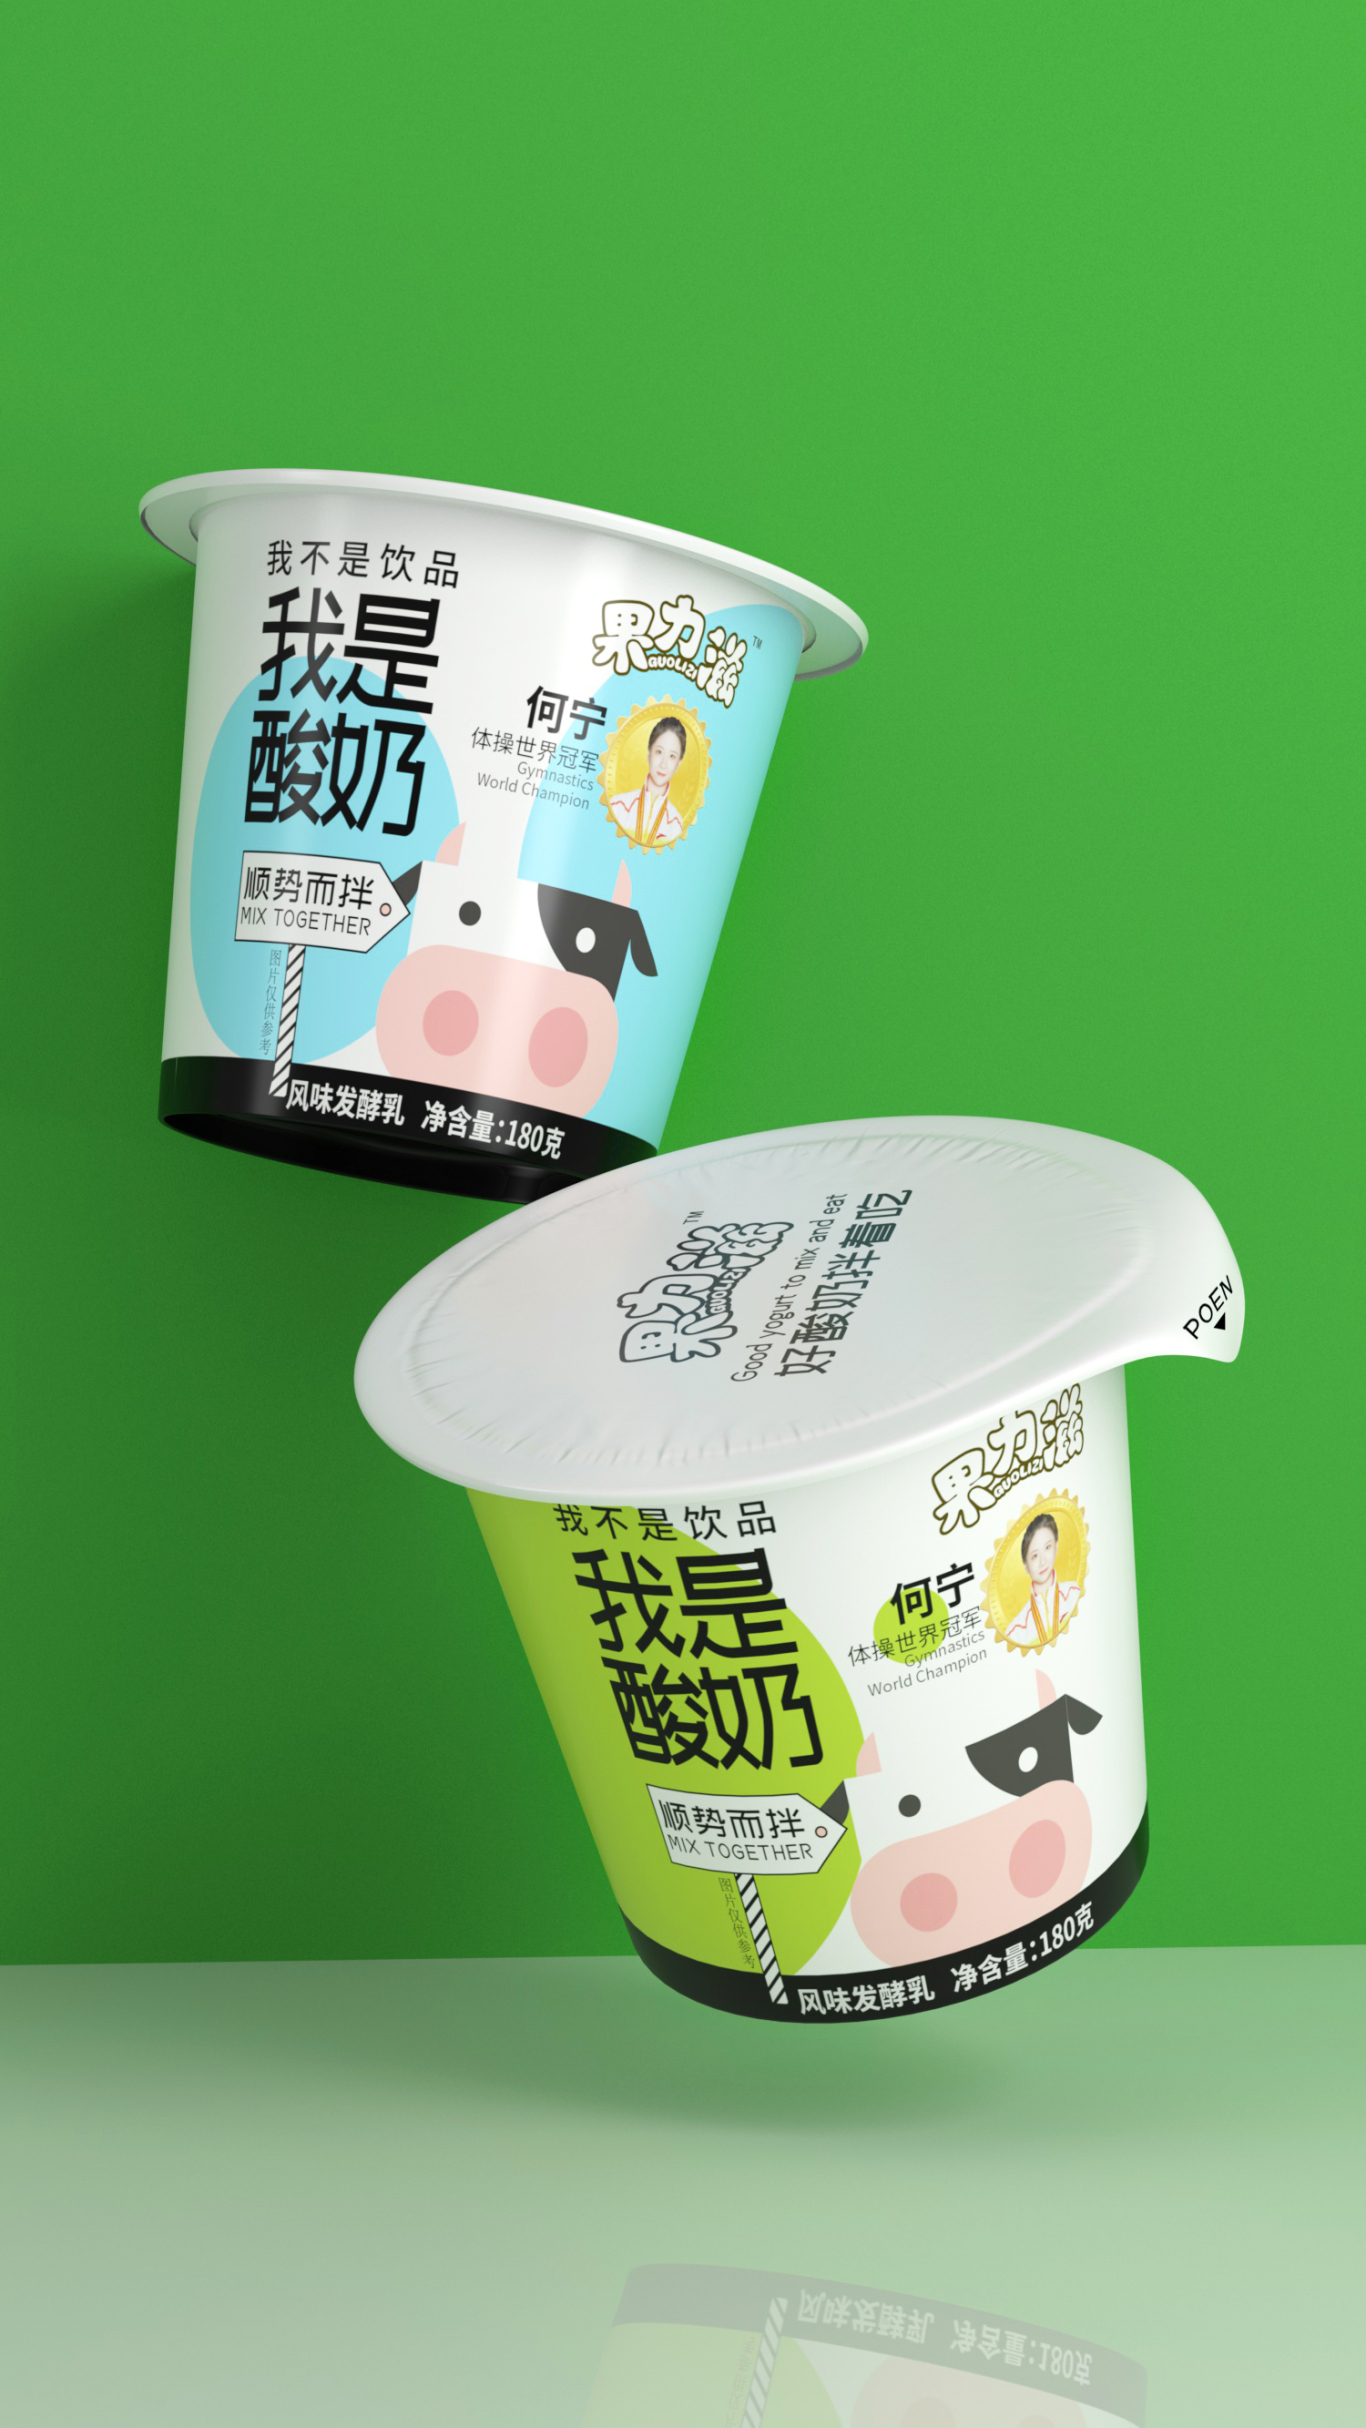 攪拌酸奶包裝設計圖2